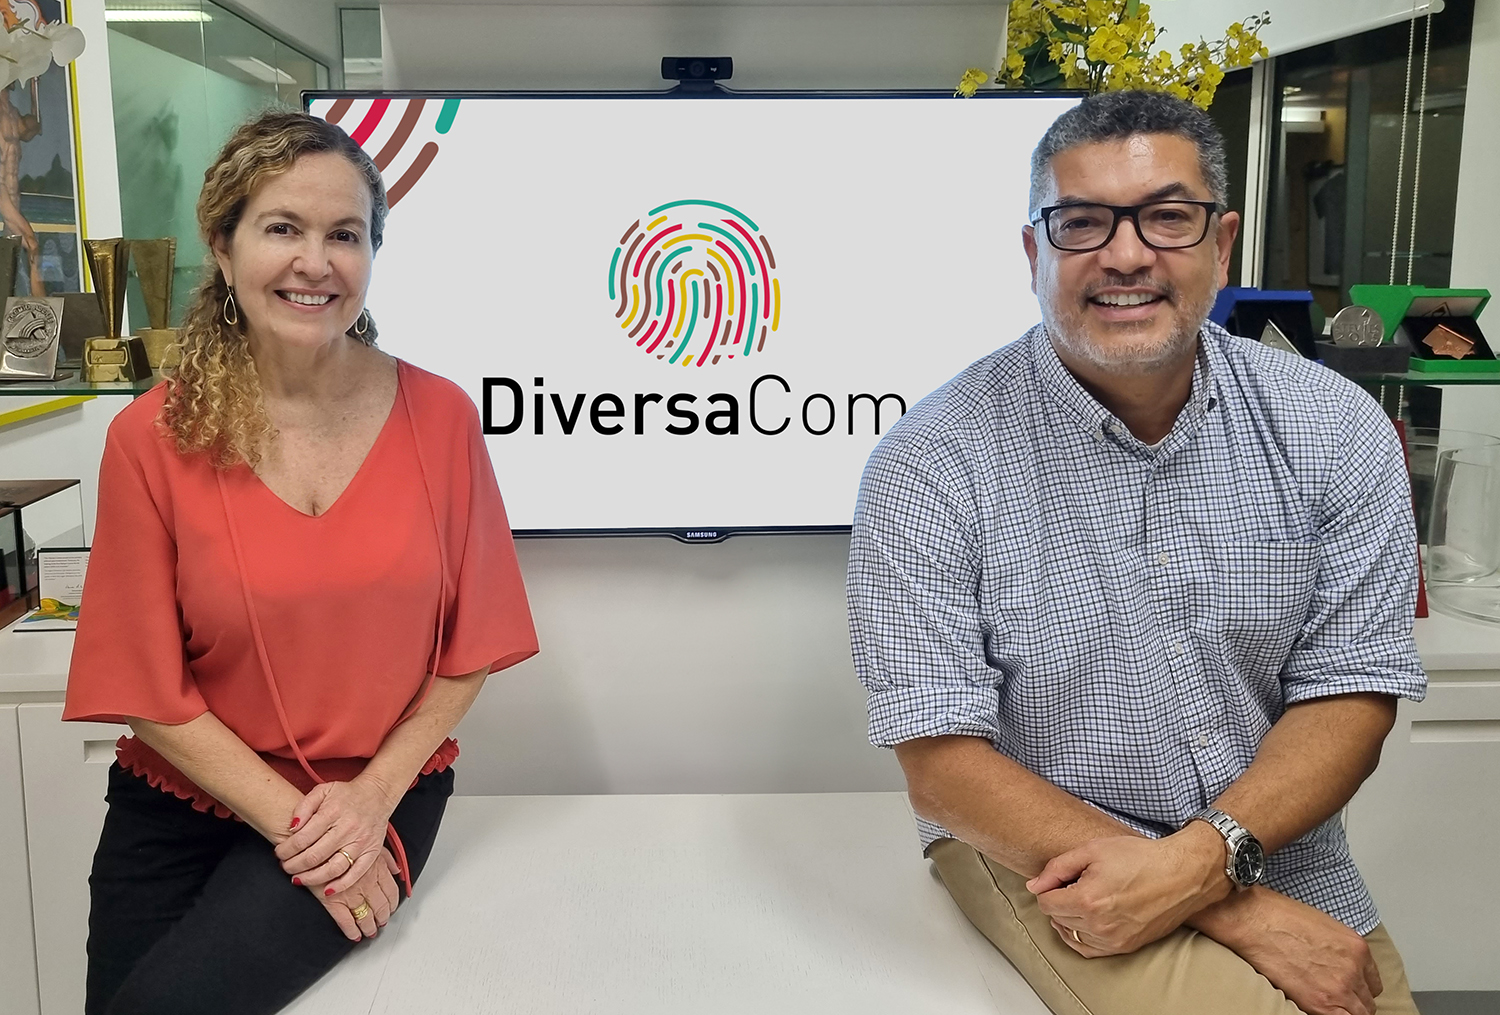 Marcelo Moreira e Carina Almeida, olhando para frente, ao meio deles está a logomarca da DiversaCom